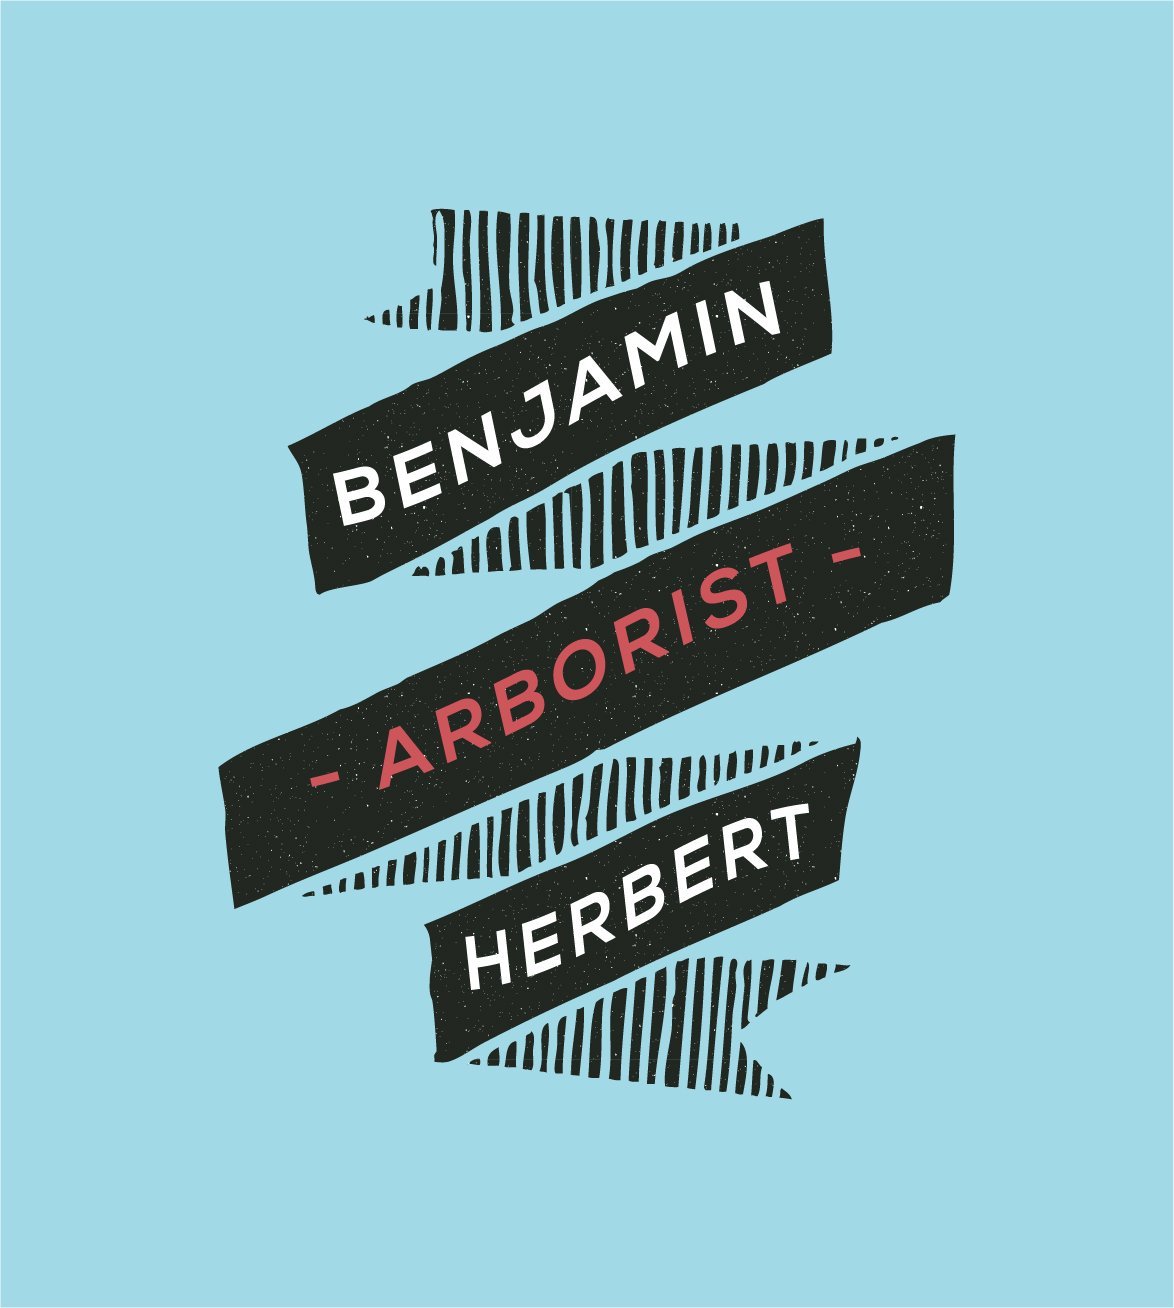 Benjamin Herber Arborist-logobadgeribbon.jpg